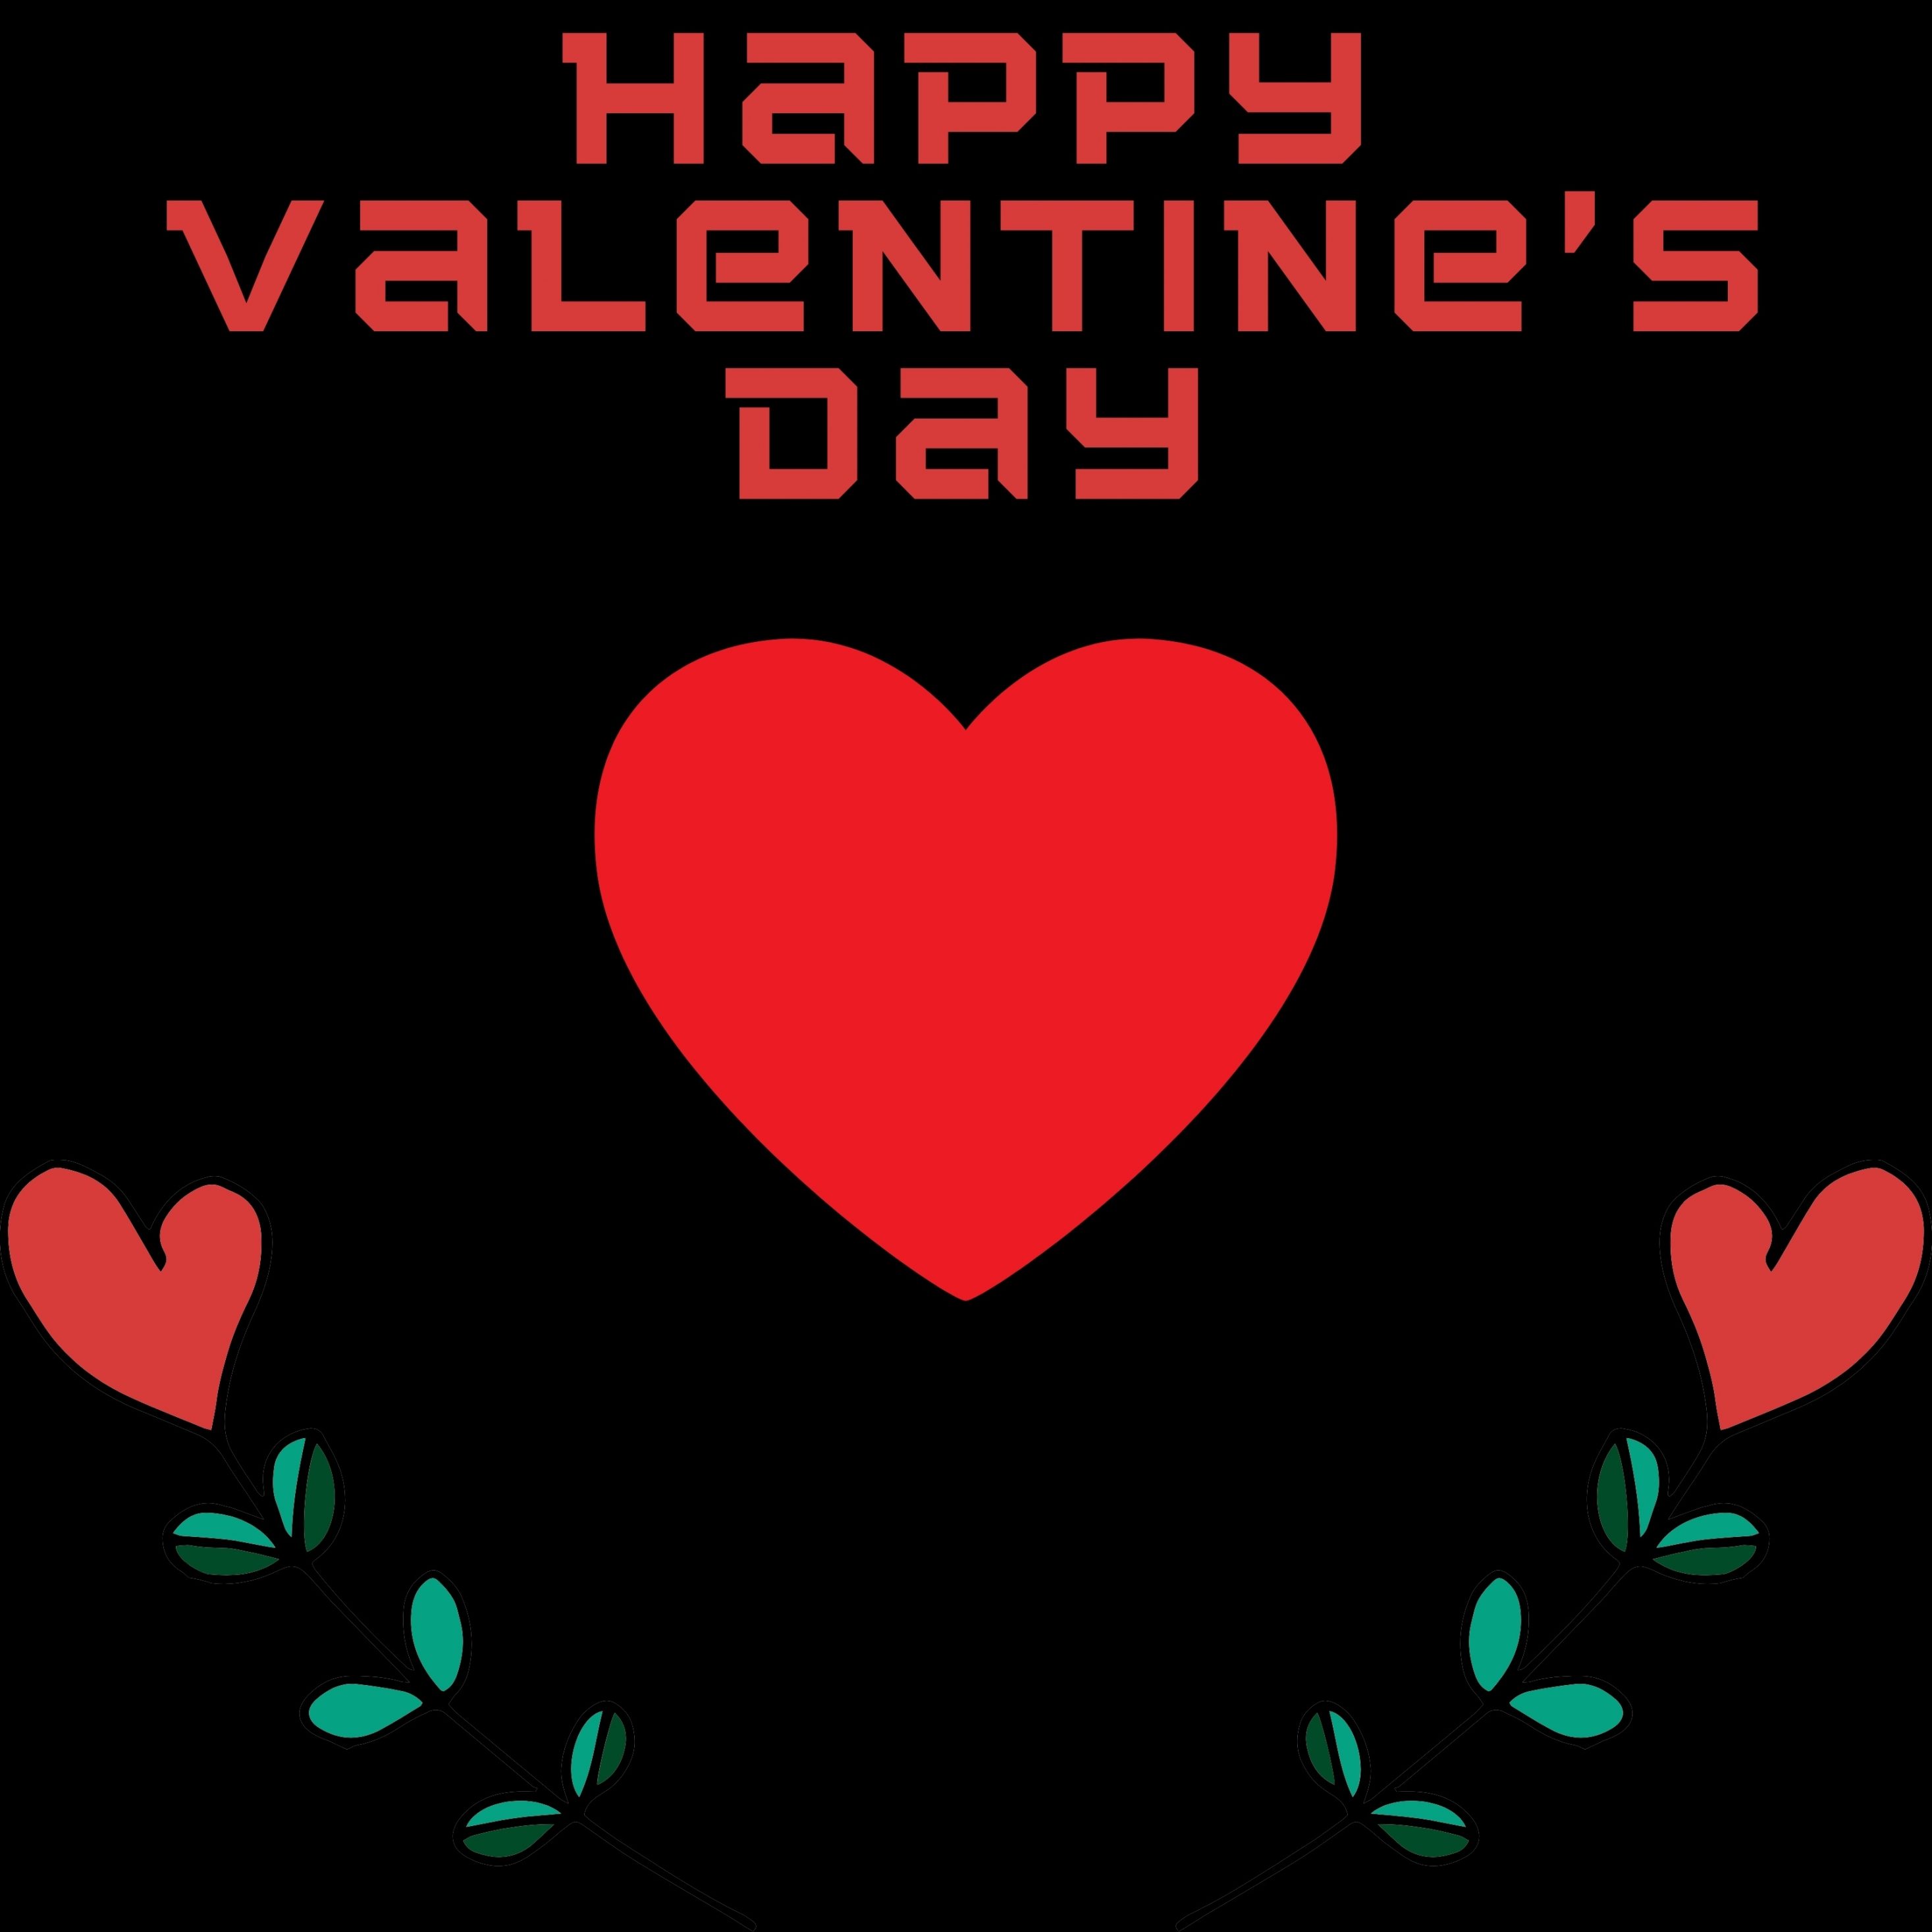 2934x2934 iOS iPad wallpaper 4k Happy Valentines Day February 14 iPad Wallpaper 2934x2934 pixels resolution